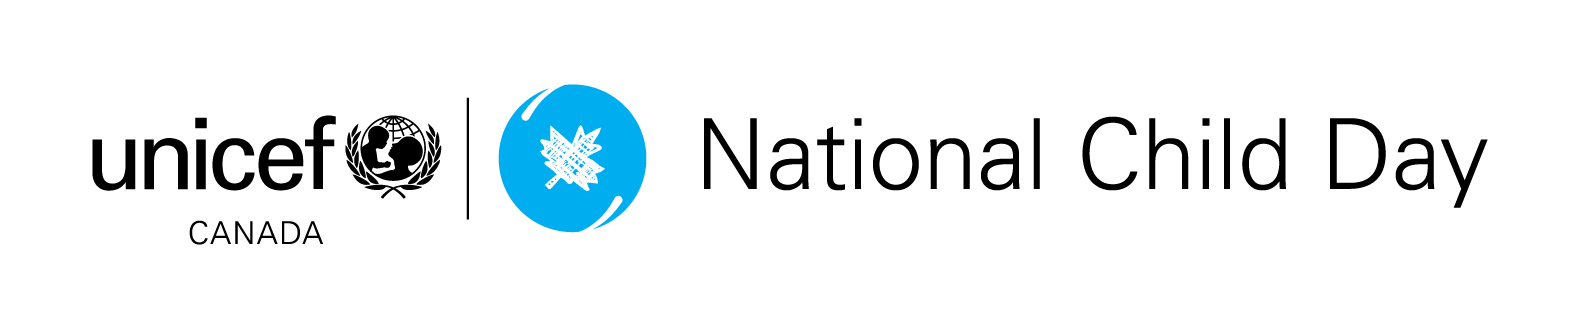 UNICEFCanada_NCD-Logo_EN_Lockup.png